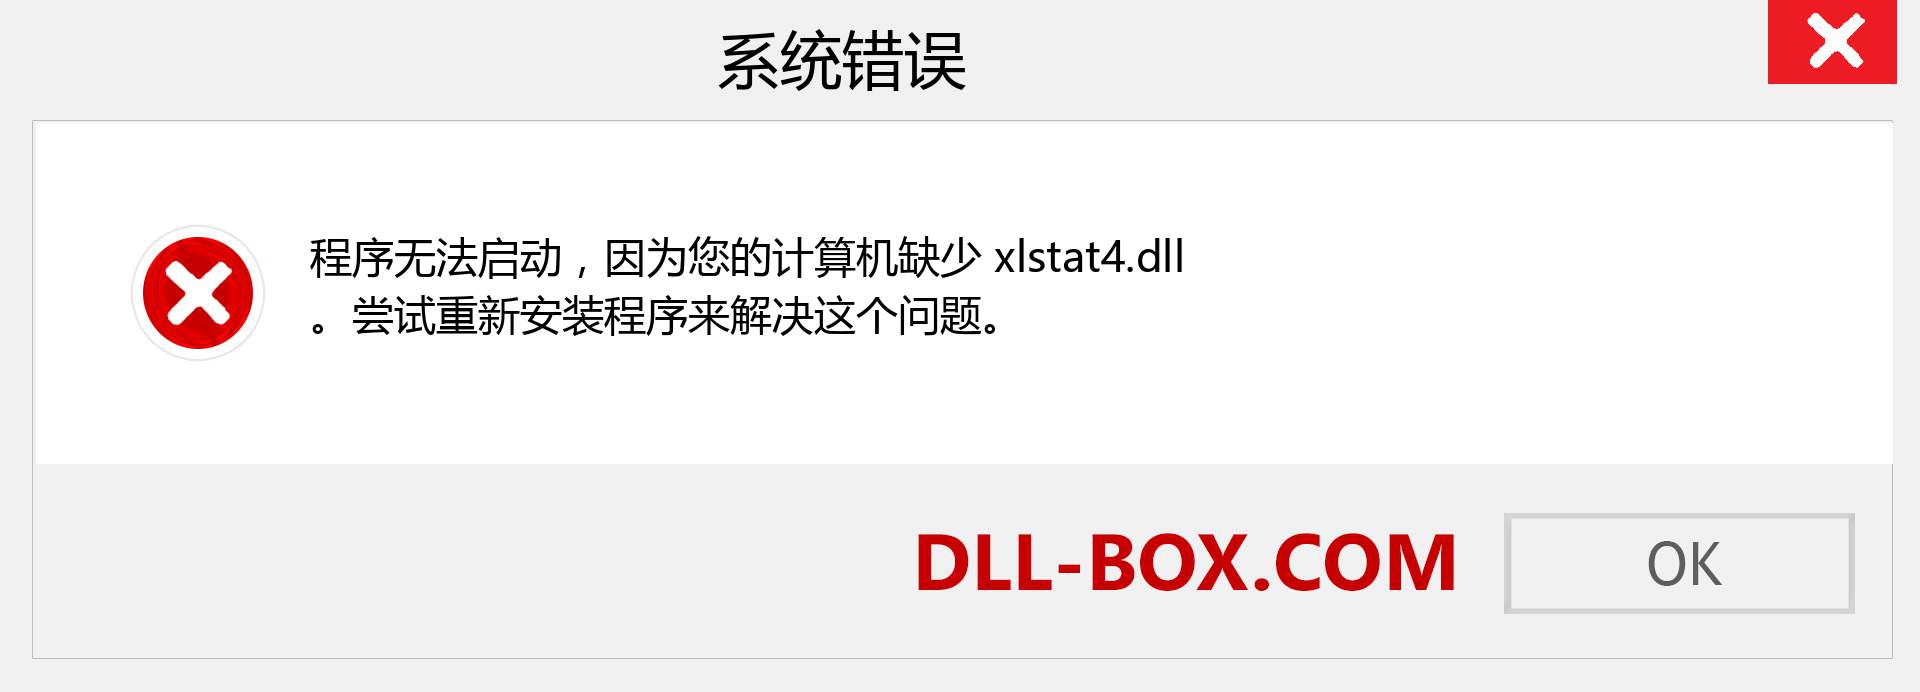 xlstat4.dll 文件丢失？。 适用于 Windows 7、8、10 的下载 - 修复 Windows、照片、图像上的 xlstat4 dll 丢失错误